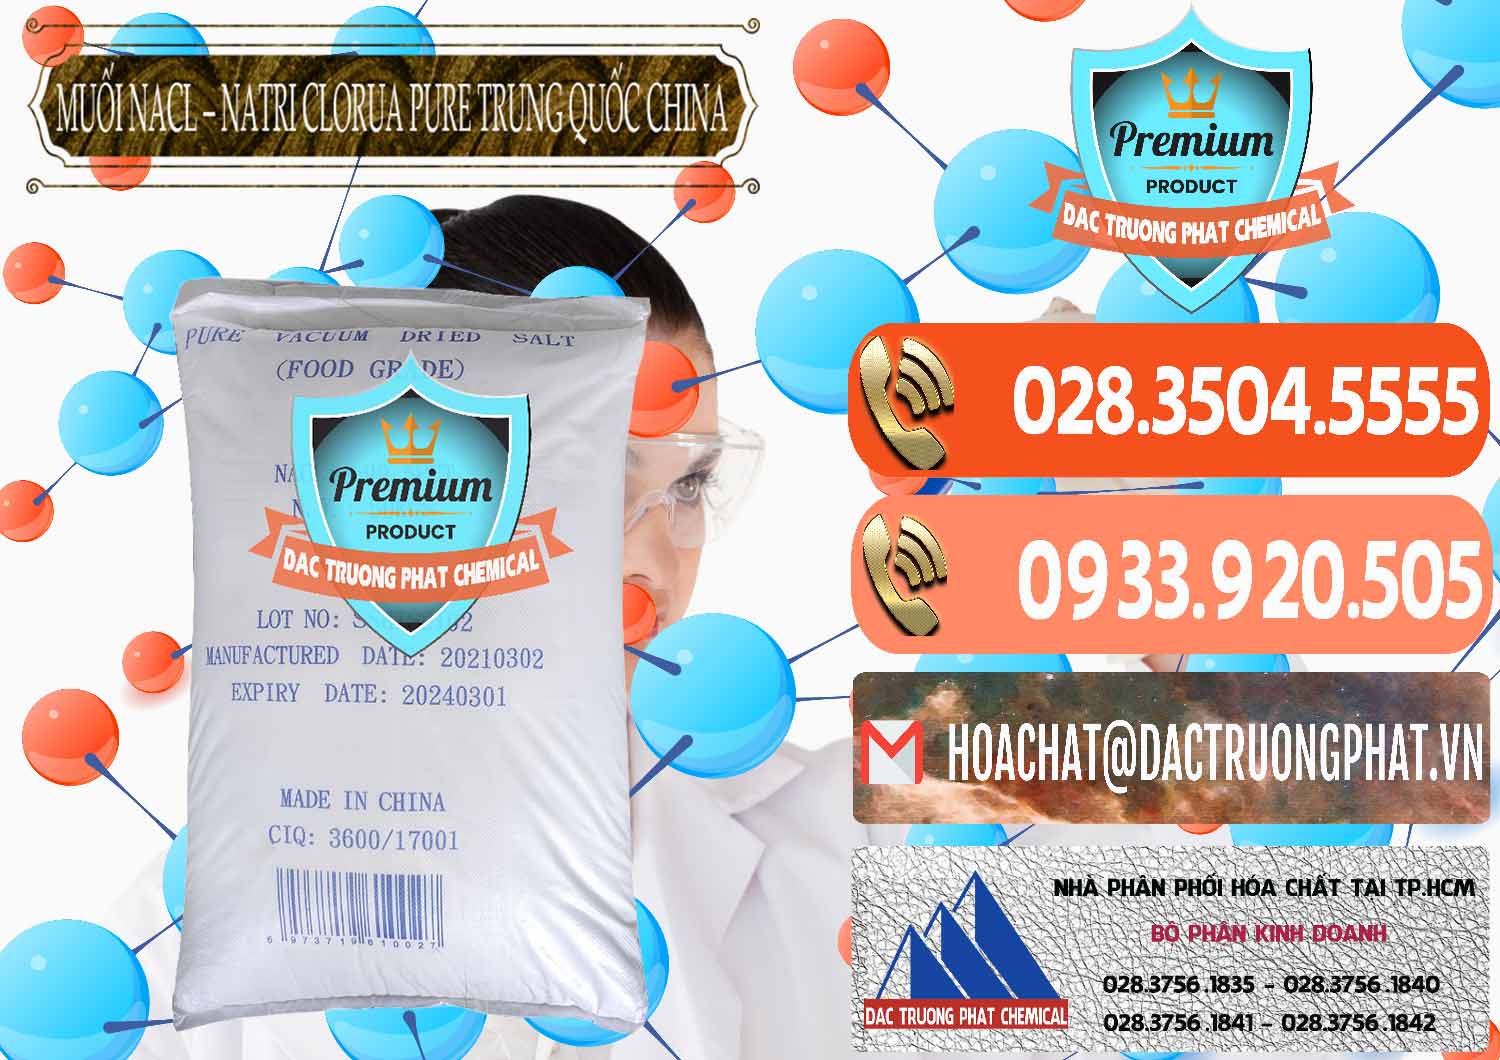 Cty cung cấp & bán Muối NaCL – Sodium Chloride Pure Trung Quốc China - 0230 - Đơn vị cung cấp - phân phối hóa chất tại TP.HCM - hoachatmientay.com